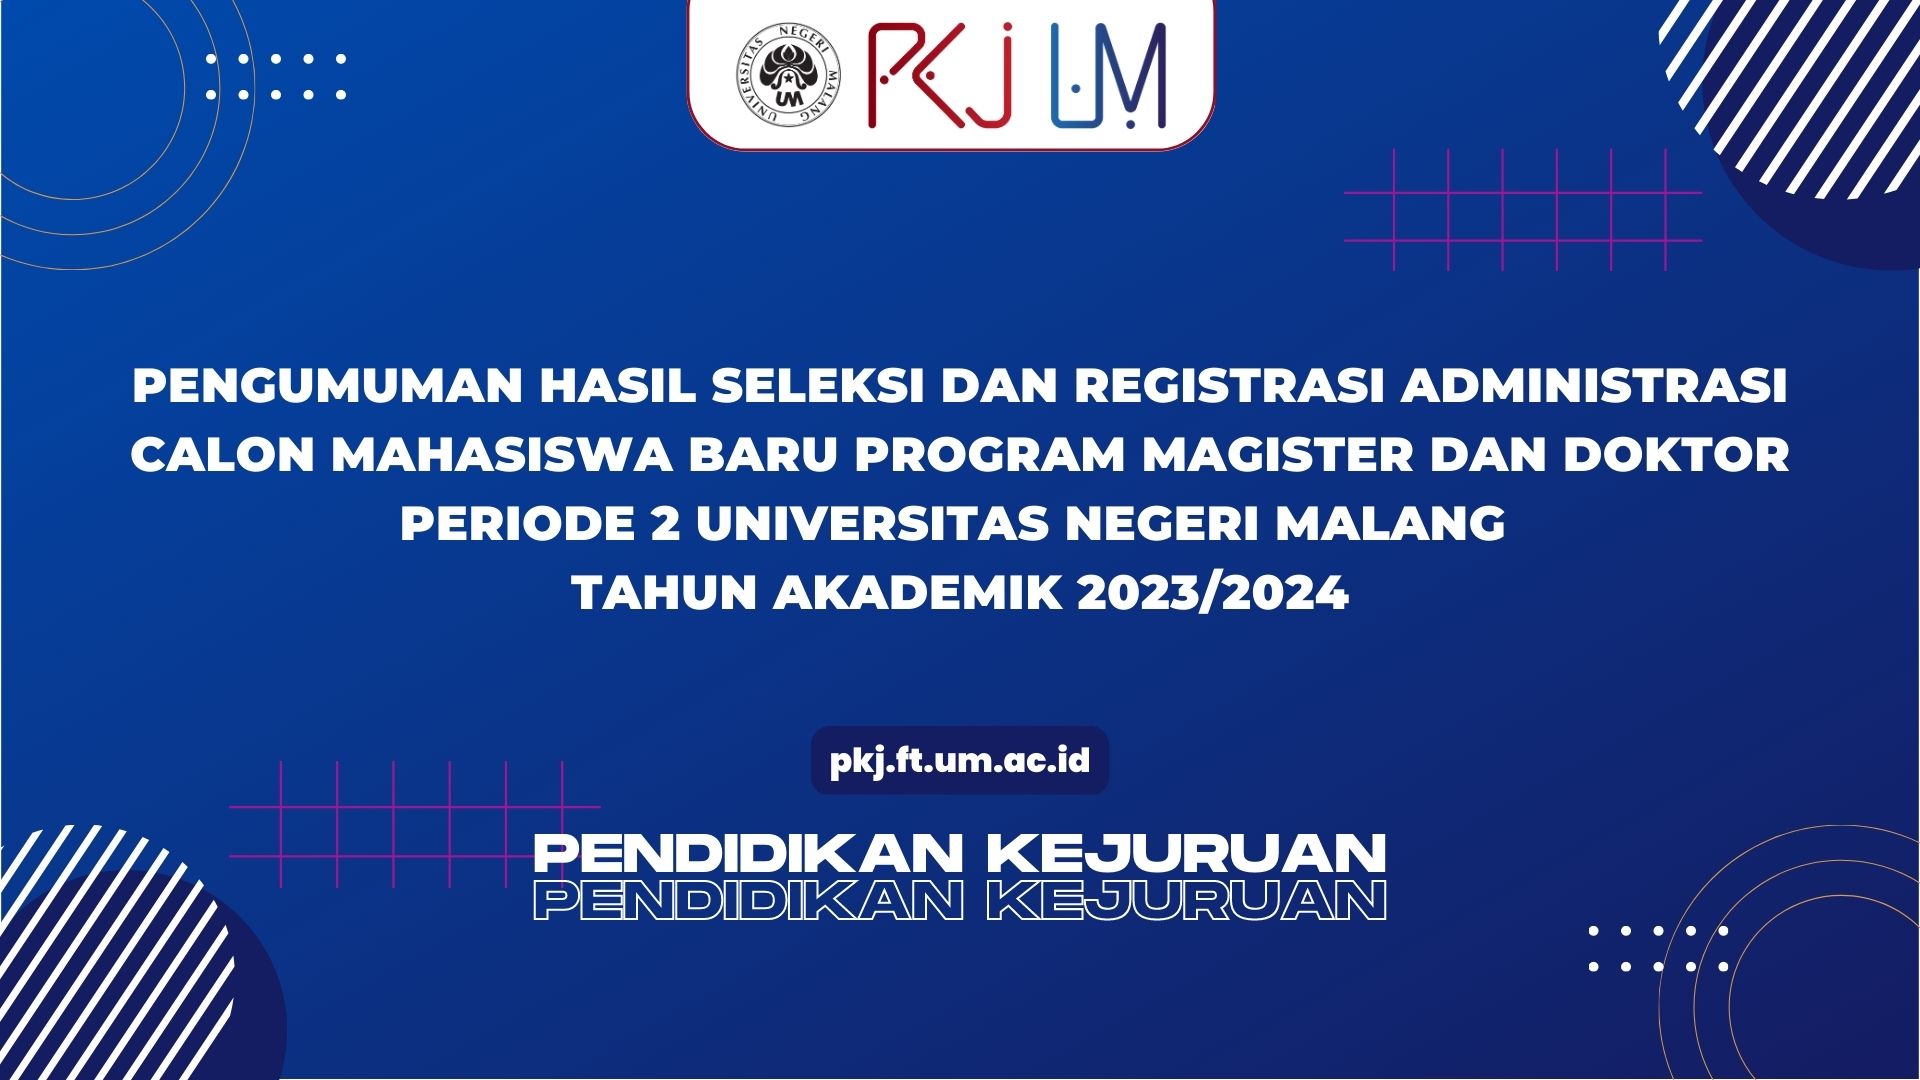 Pendaftaran Mahasiswa Baru Program Magister dan Doktor Universitas Negeri Malang Periode 2 Tahun 2023